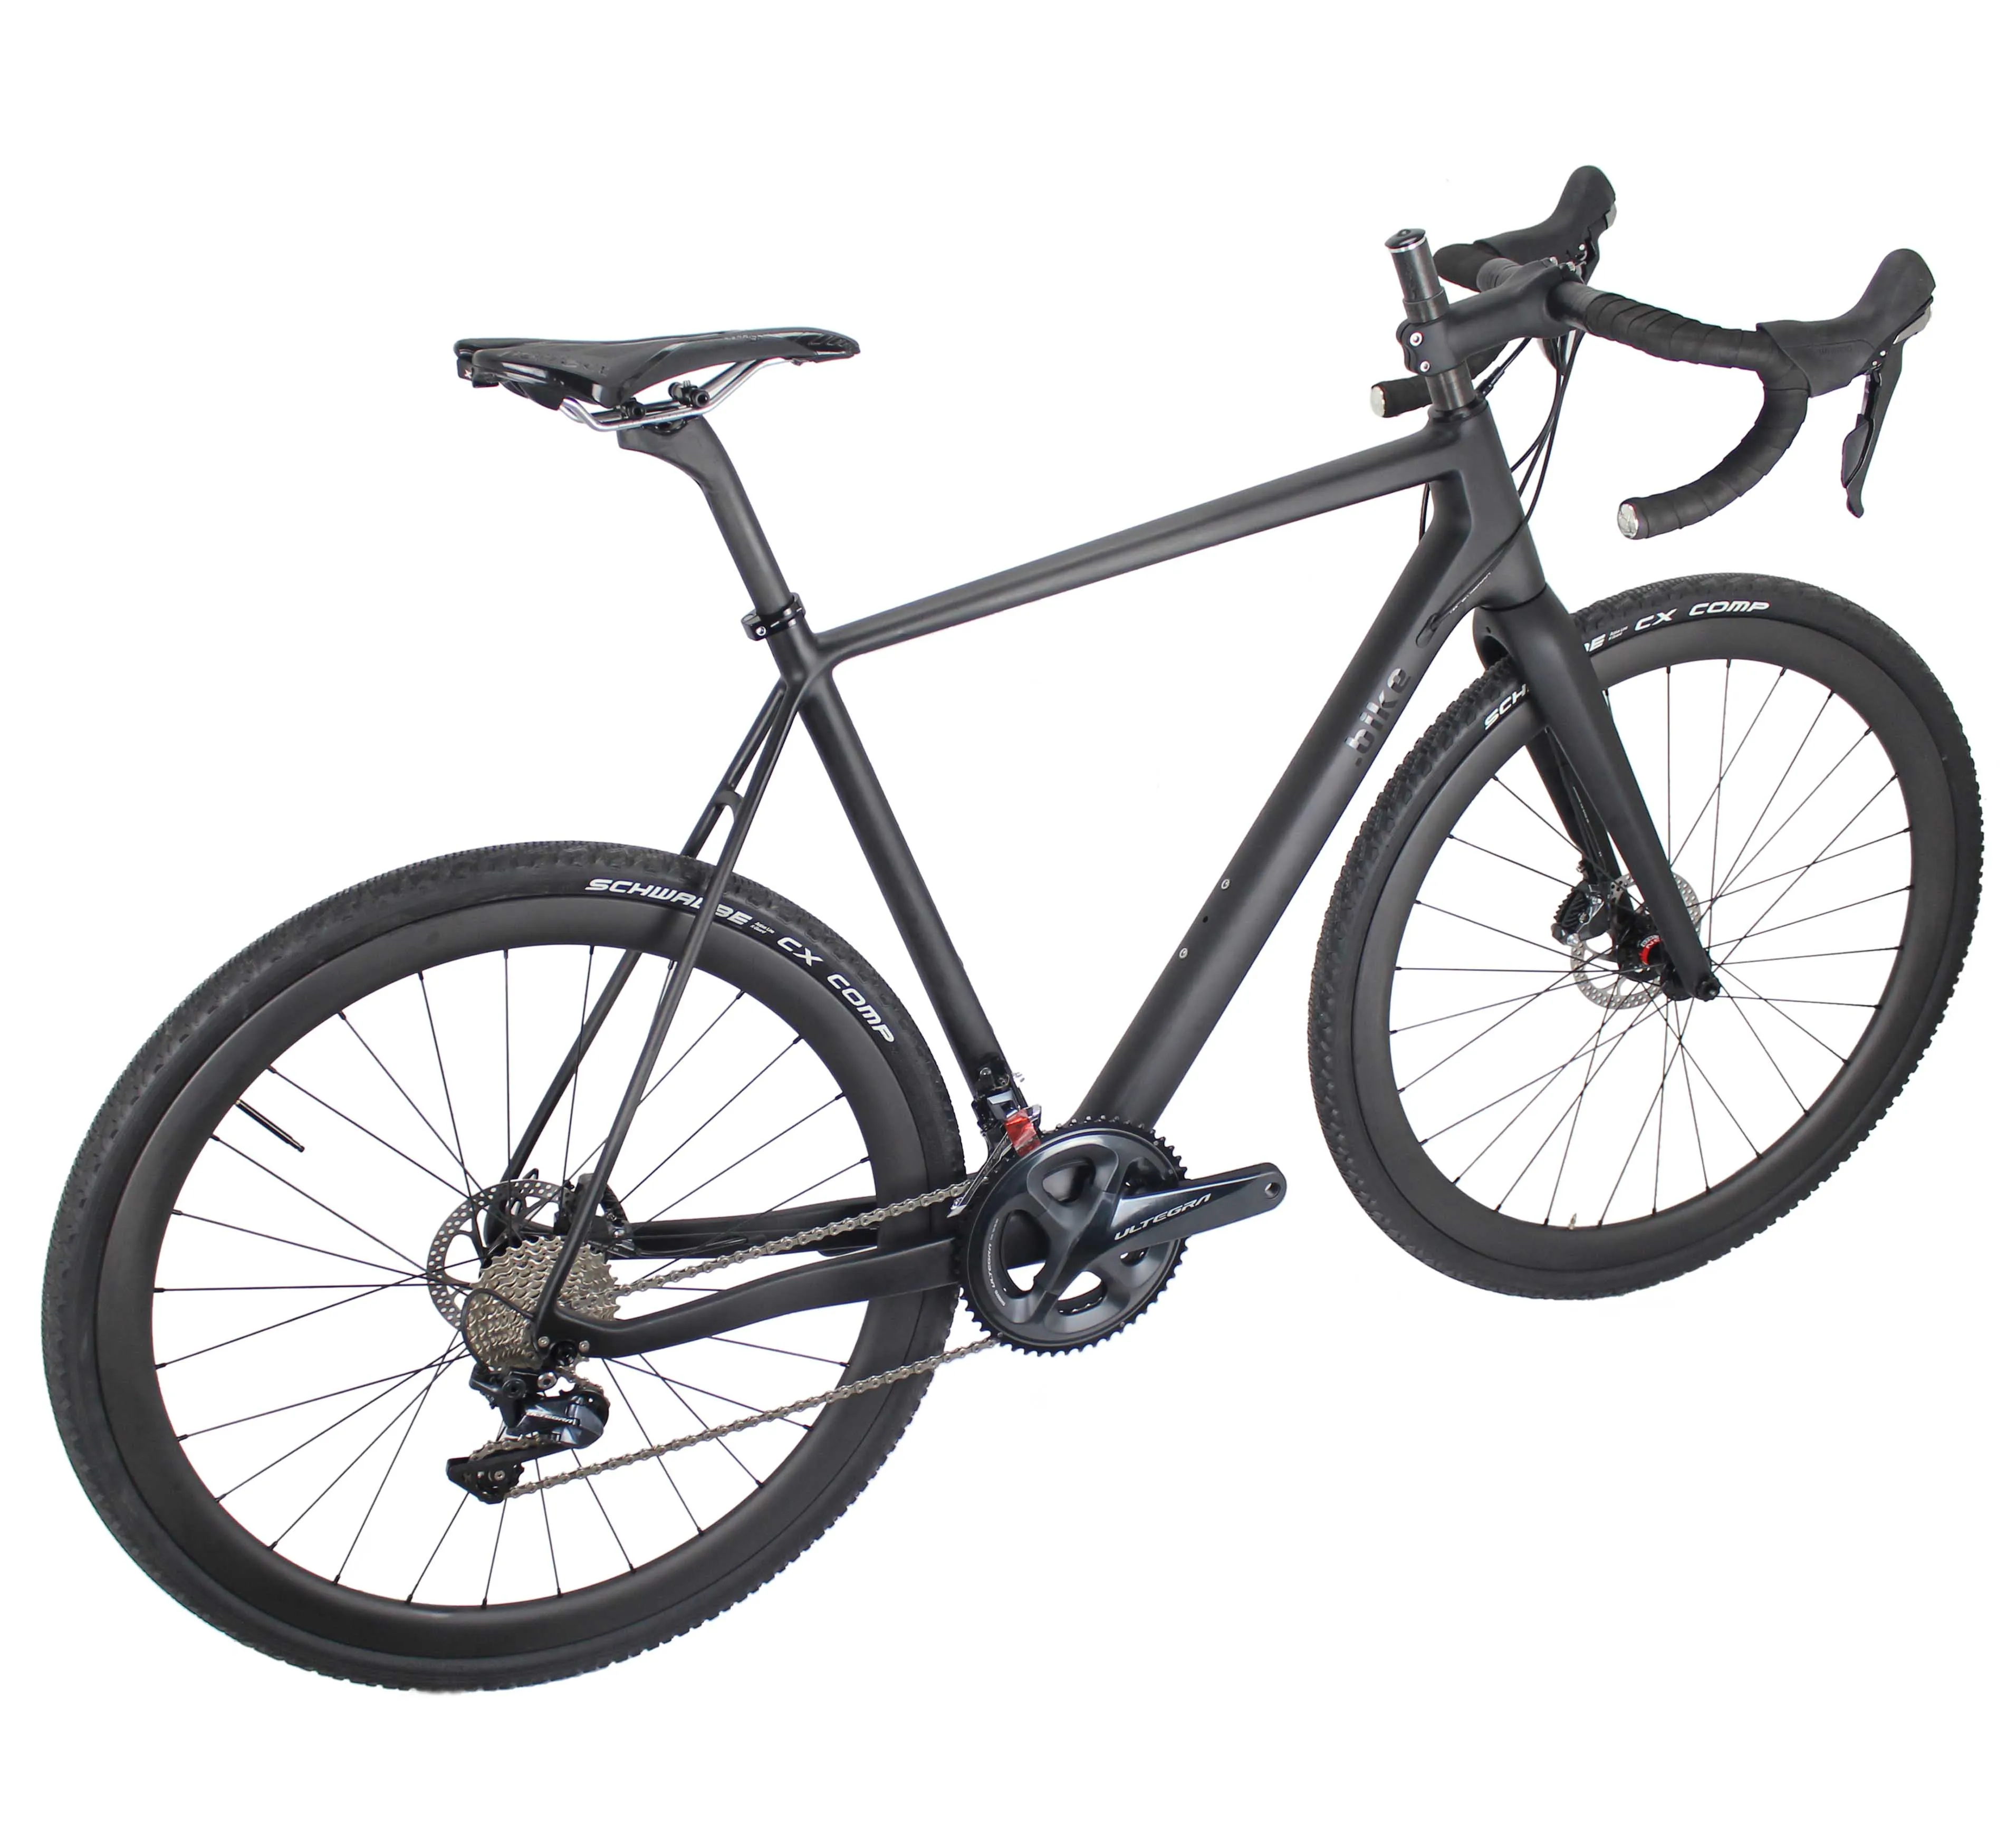 Фото Чудо новейший выпуск GR029 T1000 карбоновая рама гравийный велосипед полный супер